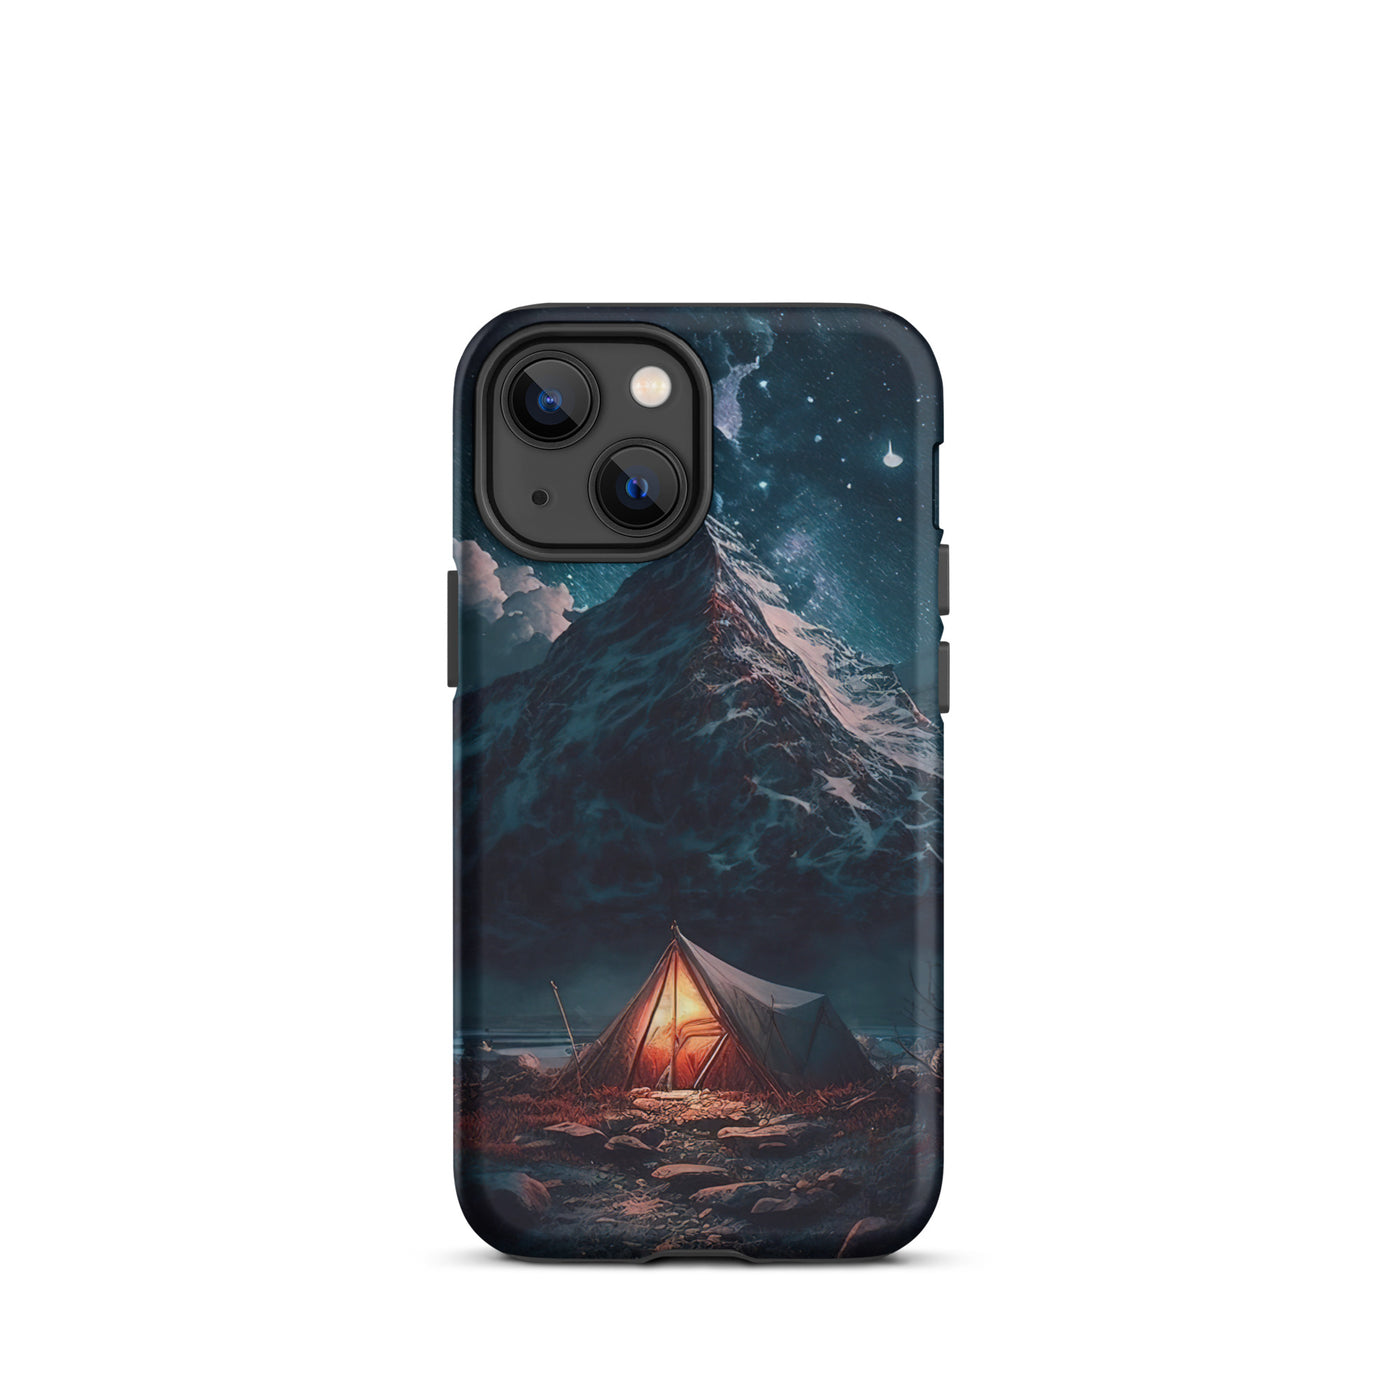 Zelt und Berg in der Nacht - Sterne am Himmel - Landschaftsmalerei - iPhone Schutzhülle (robust) camping xxx iPhone 13 mini